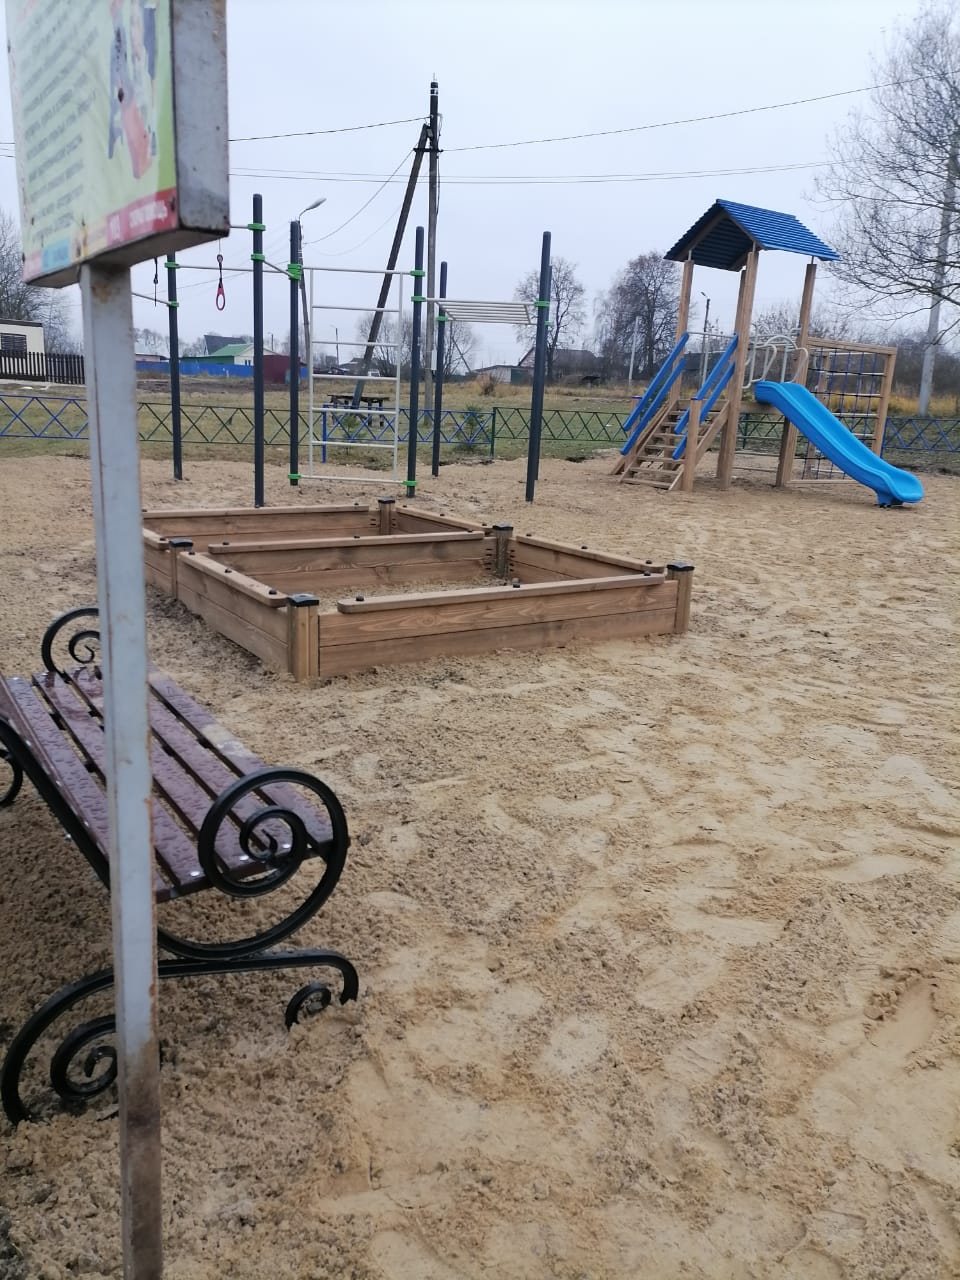 Ребятишкам на радость - новая детская игровая площадка появилась в селе Борищево.